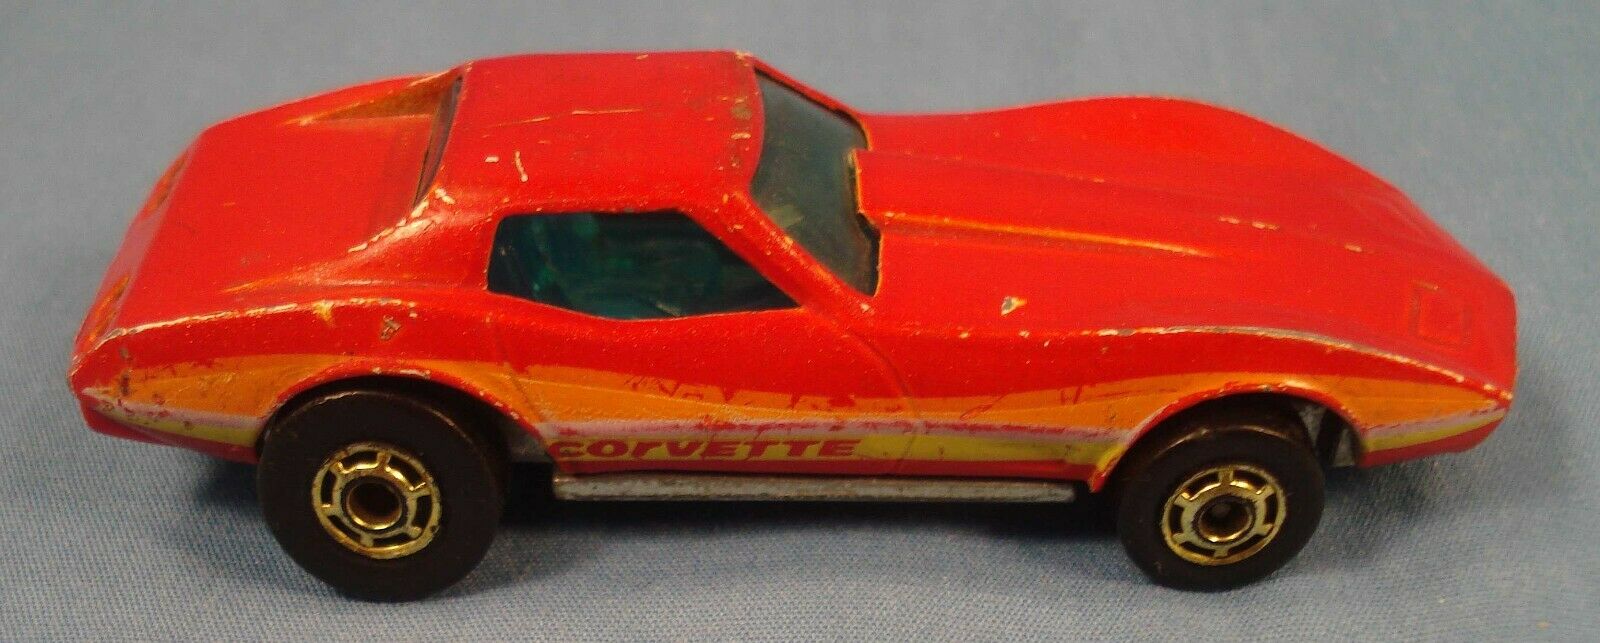 Hot Wheels Corvette Stingray 1980 Red.